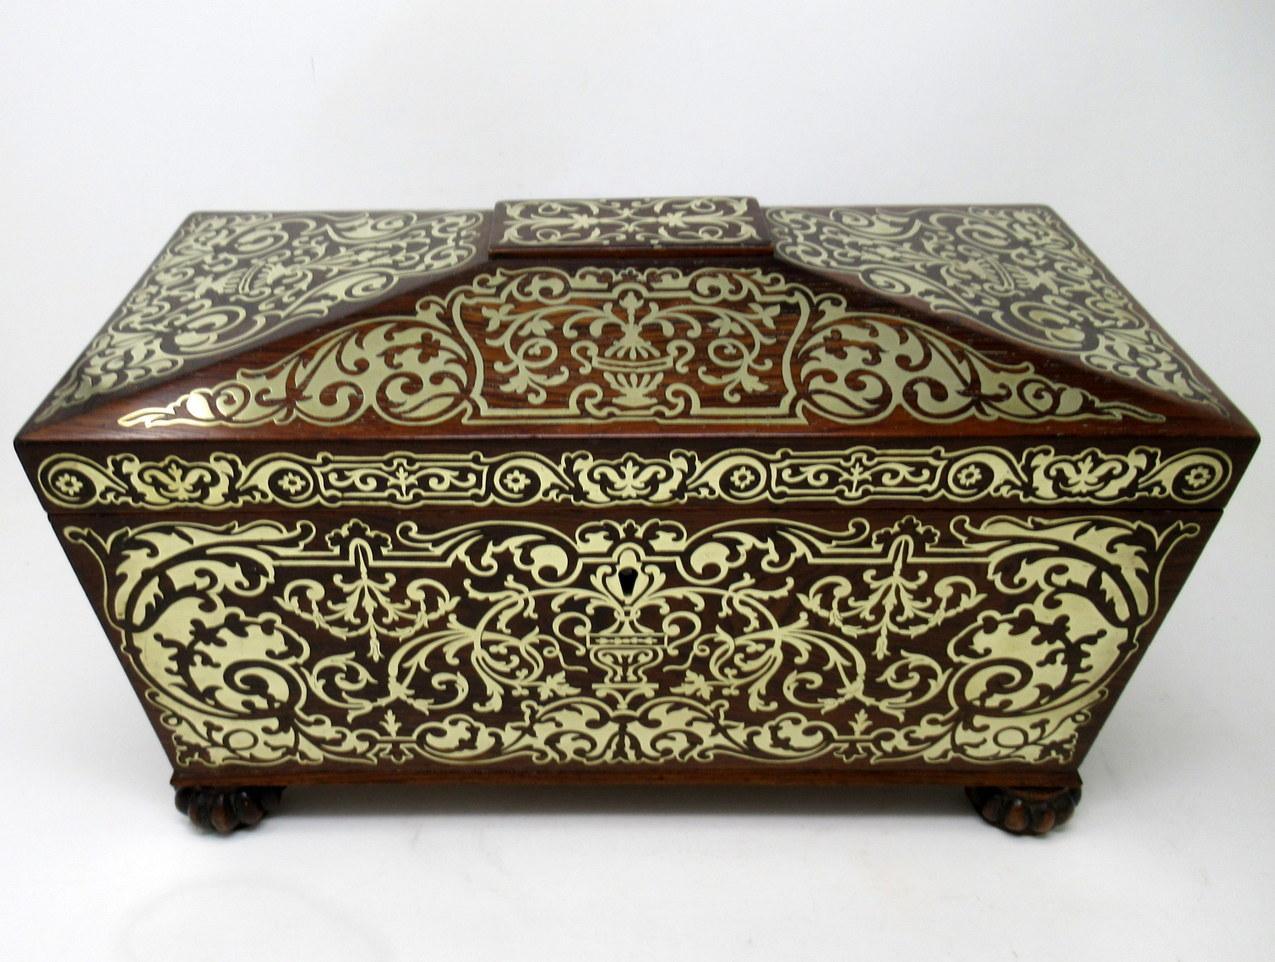 Superbe exemple d'une double boîte à thé en mahoganu de style Régence anglaise, de forme traditionnelle de sarcophage, avec de somptueuses incrustations de laiton. Le couvercle à charnière en forme de dôme renferme un intérieur complet d'origine,